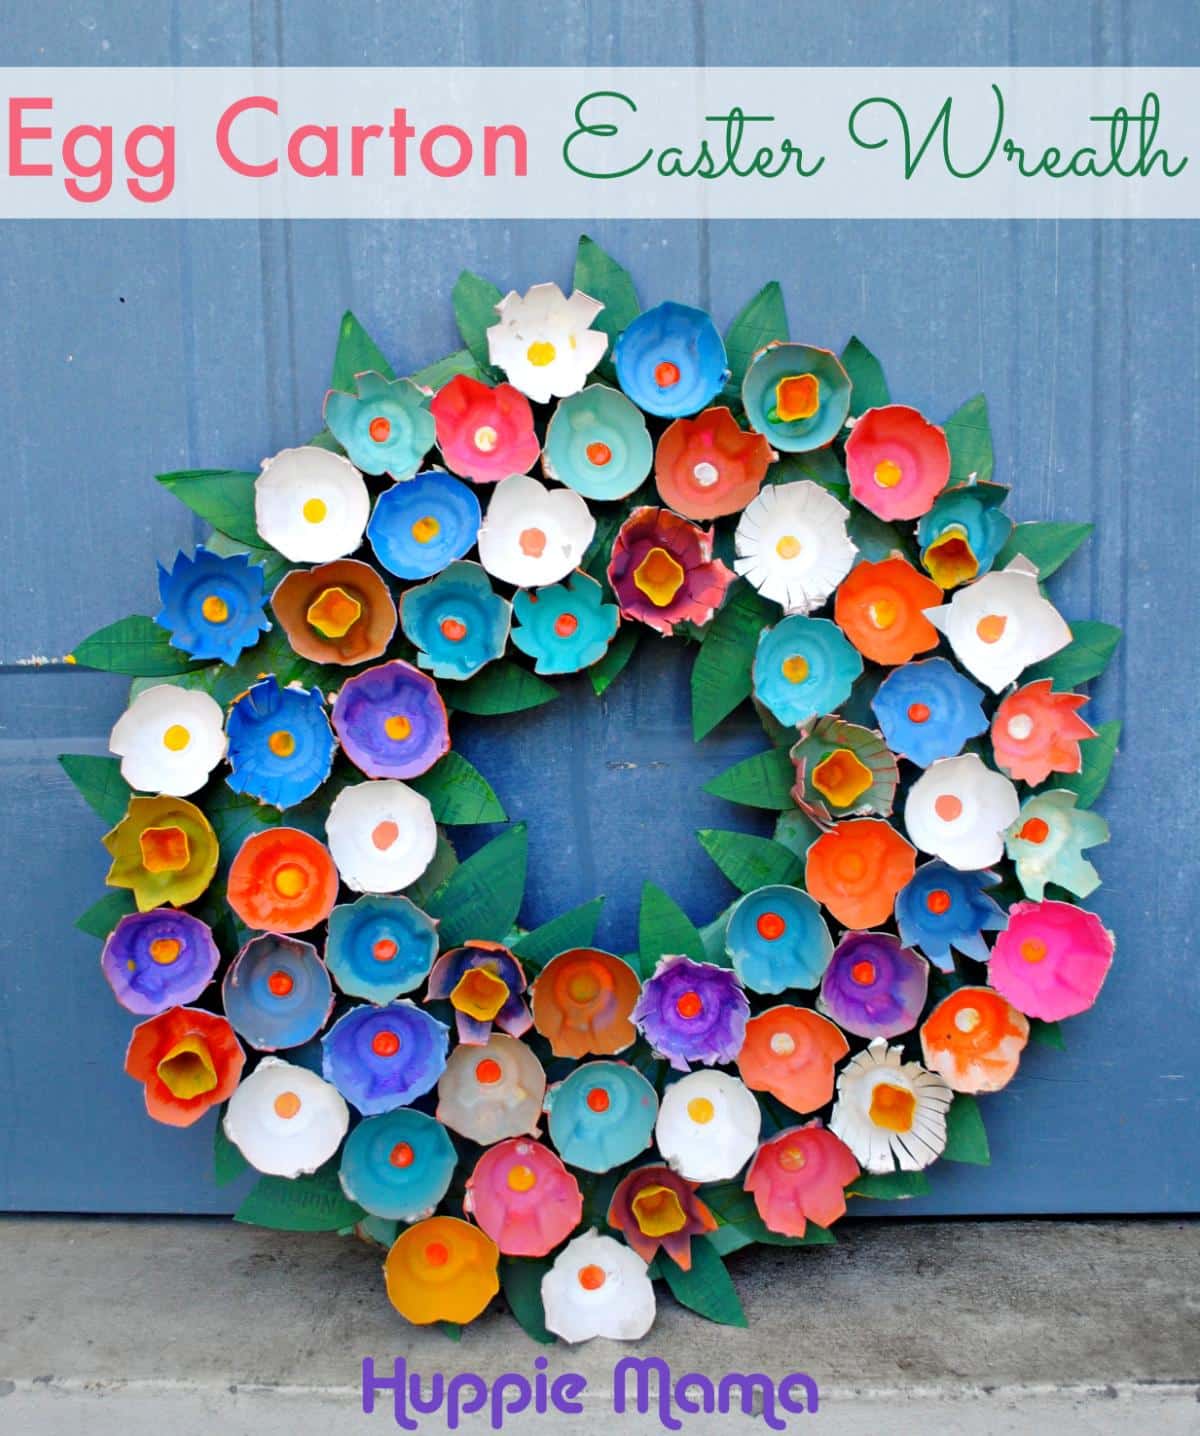 Big Egg Carton Wreath